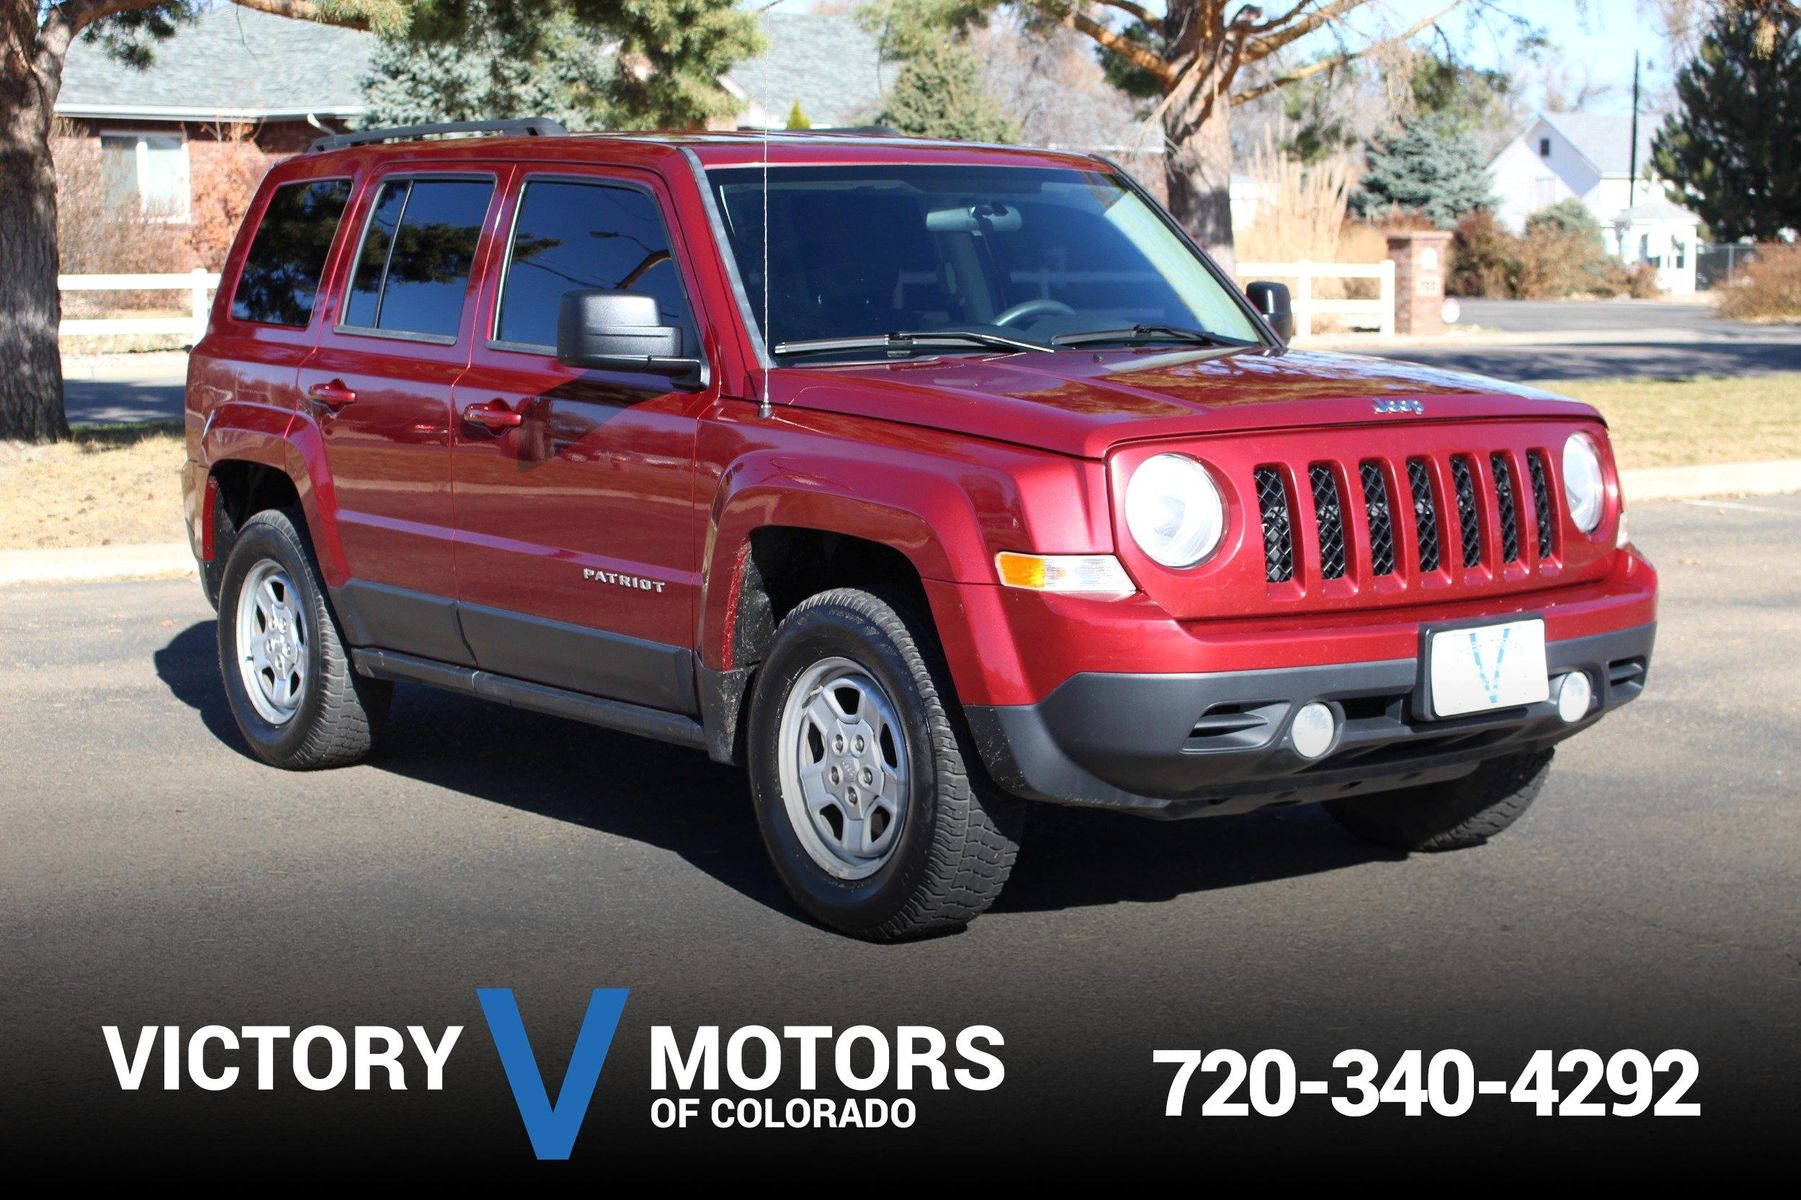 2014 Jeep Patriot Sport Victory Motors of Colorado